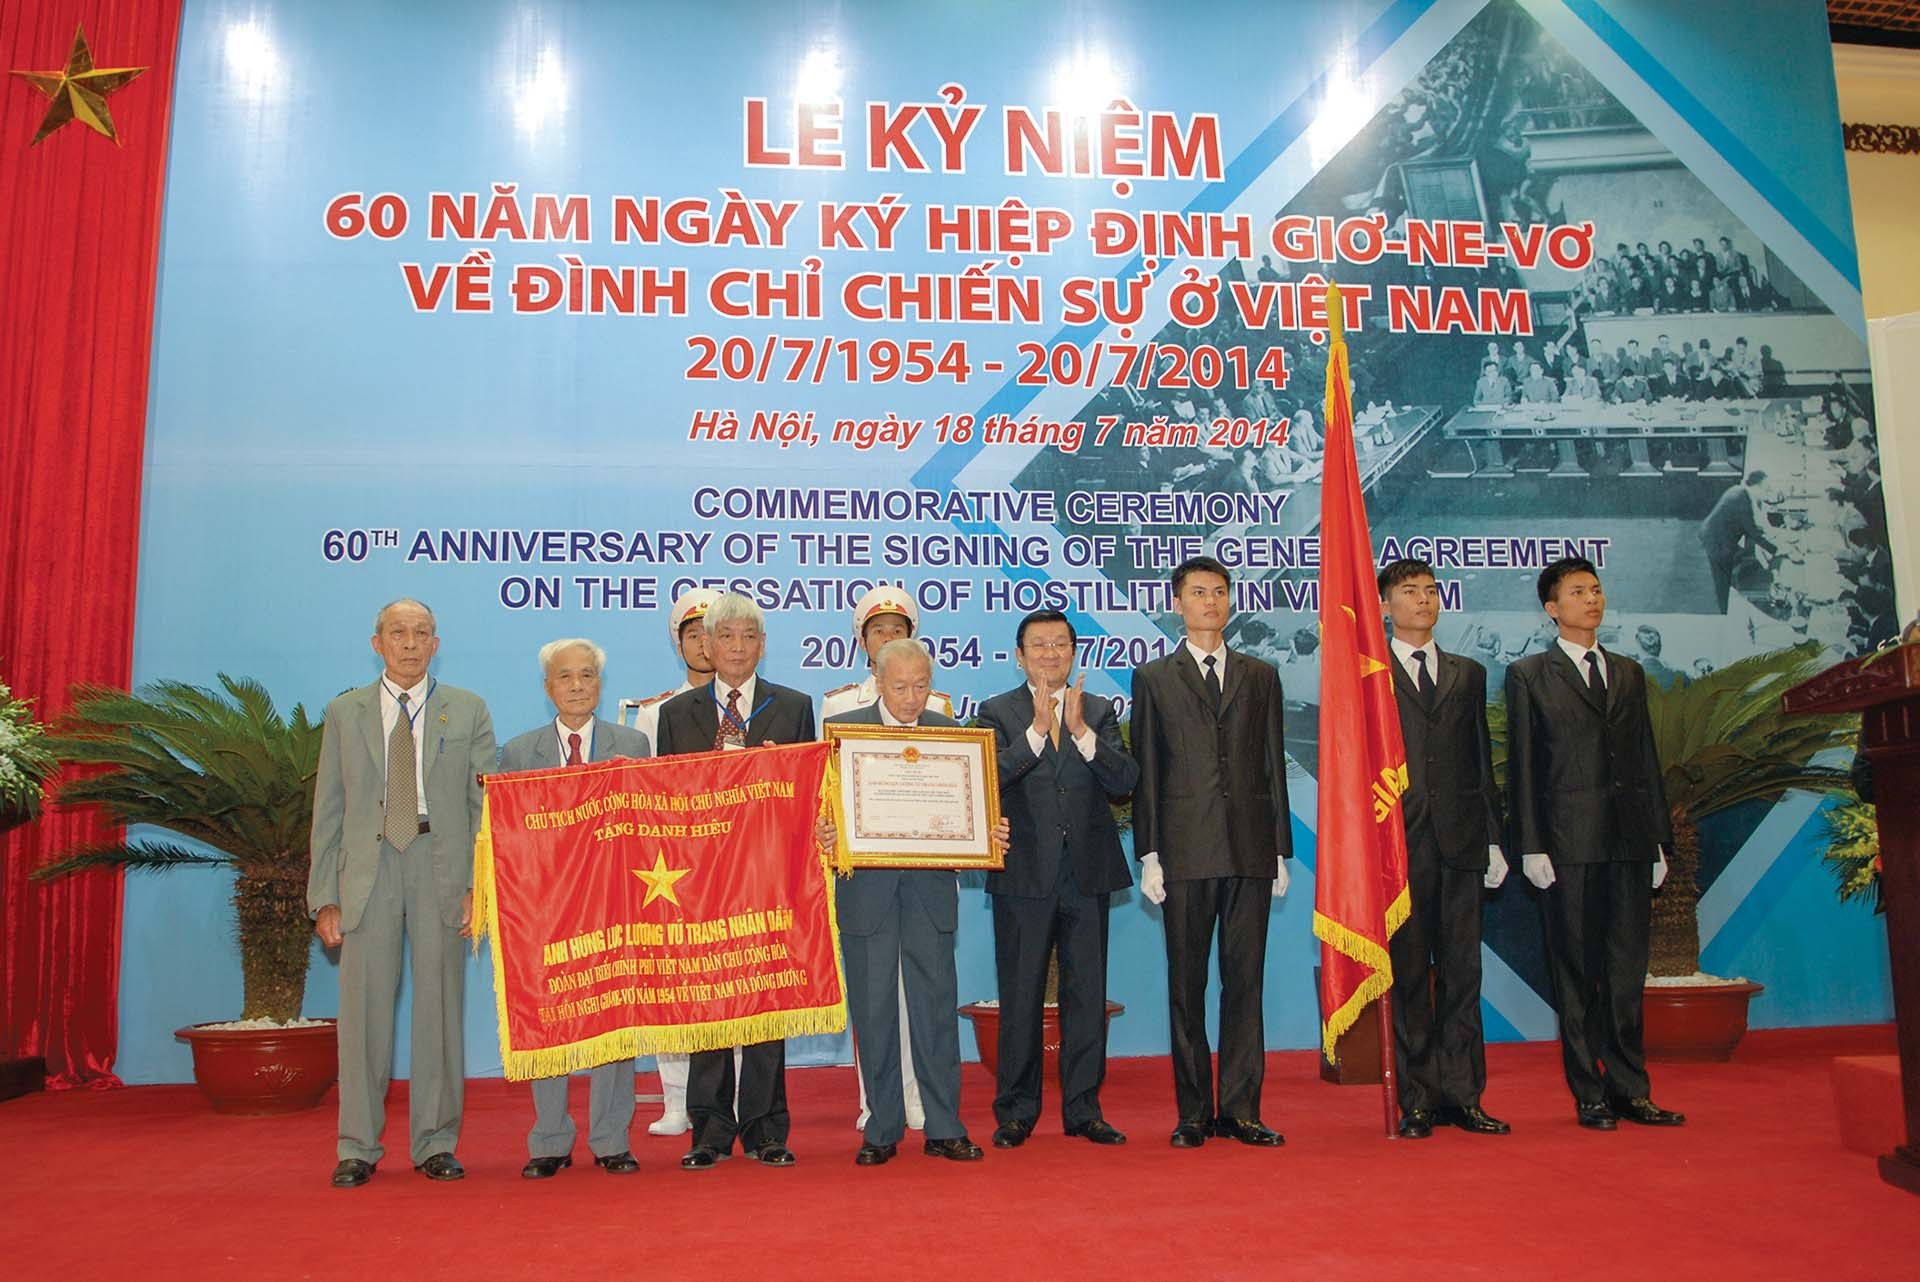 Chủ tịch nước Trương Tấn Sang trao tặng danh hiệu “Anh hùng Lực lượng vũ trang nhân dân Việt Nam” cho Đoàn đại biểu  Việt Nam DCCH tham dự Hội nghị Geneva năm 1954.